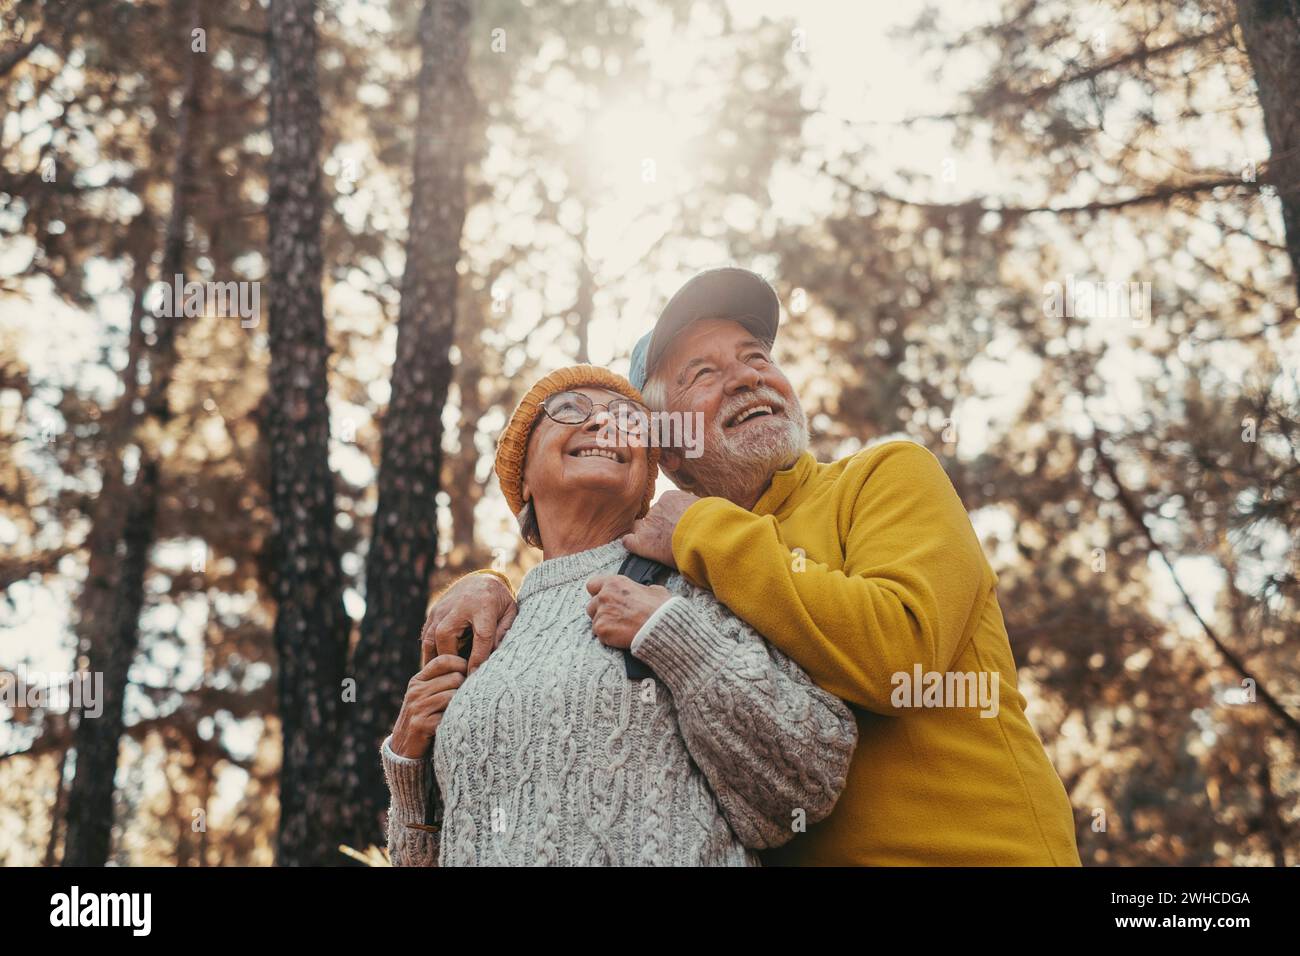 Porträt, Nahaufnahme von fröhlichen Menschen mittleren Alters, die lächeln und die Bäume des Waldes um sie herum betrachten. Aktives Paar alter Senioren, die gemeinsam im Berg wandern und spazieren gehen und Spaß haben. Stockfoto